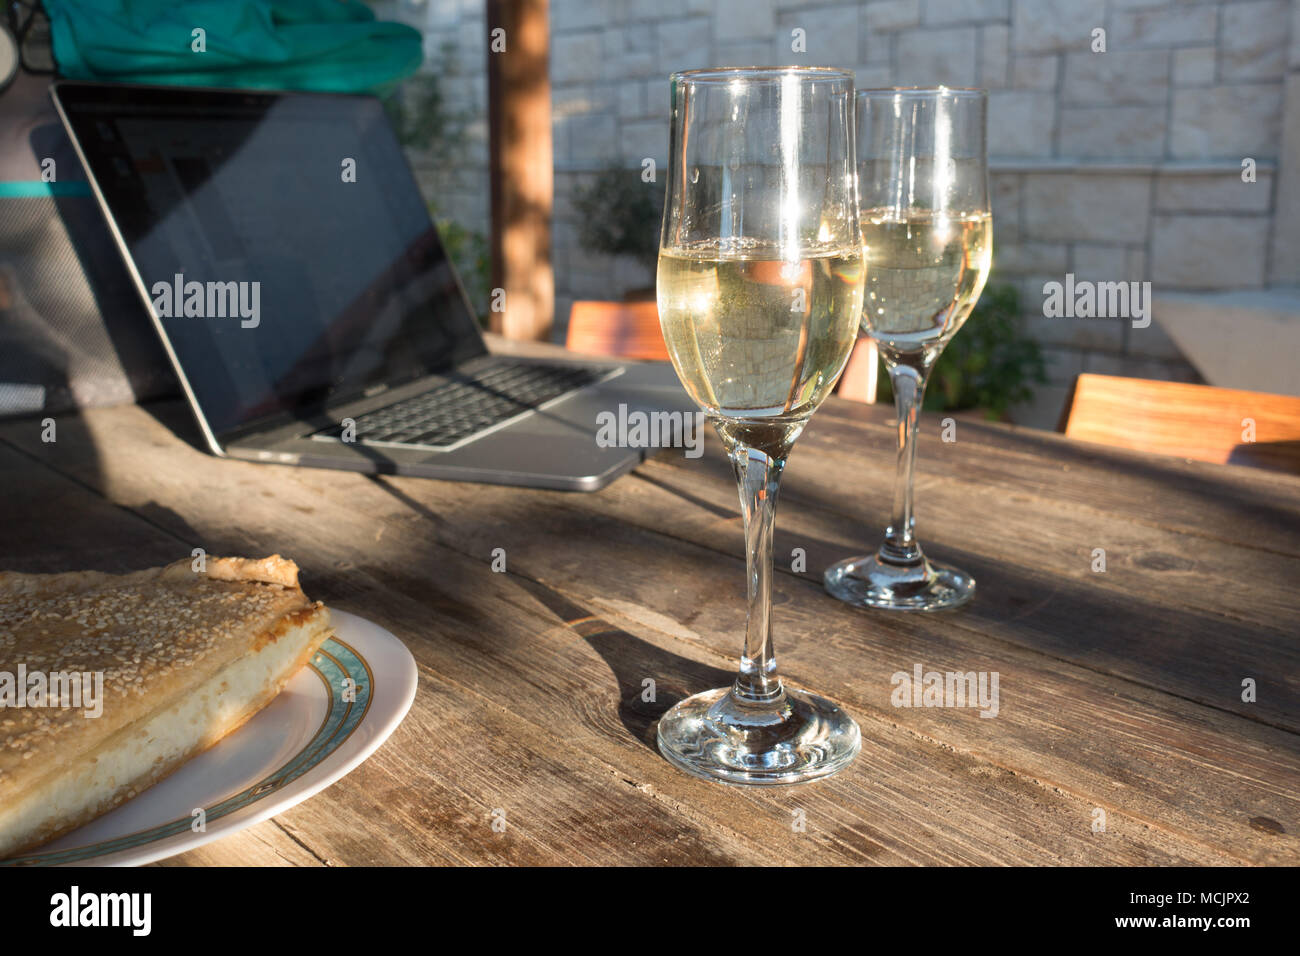 Verres de vin blanc étincelaient sur table de salle à manger avec un ordinateur portable, Crète, Grèce Banque D'Images